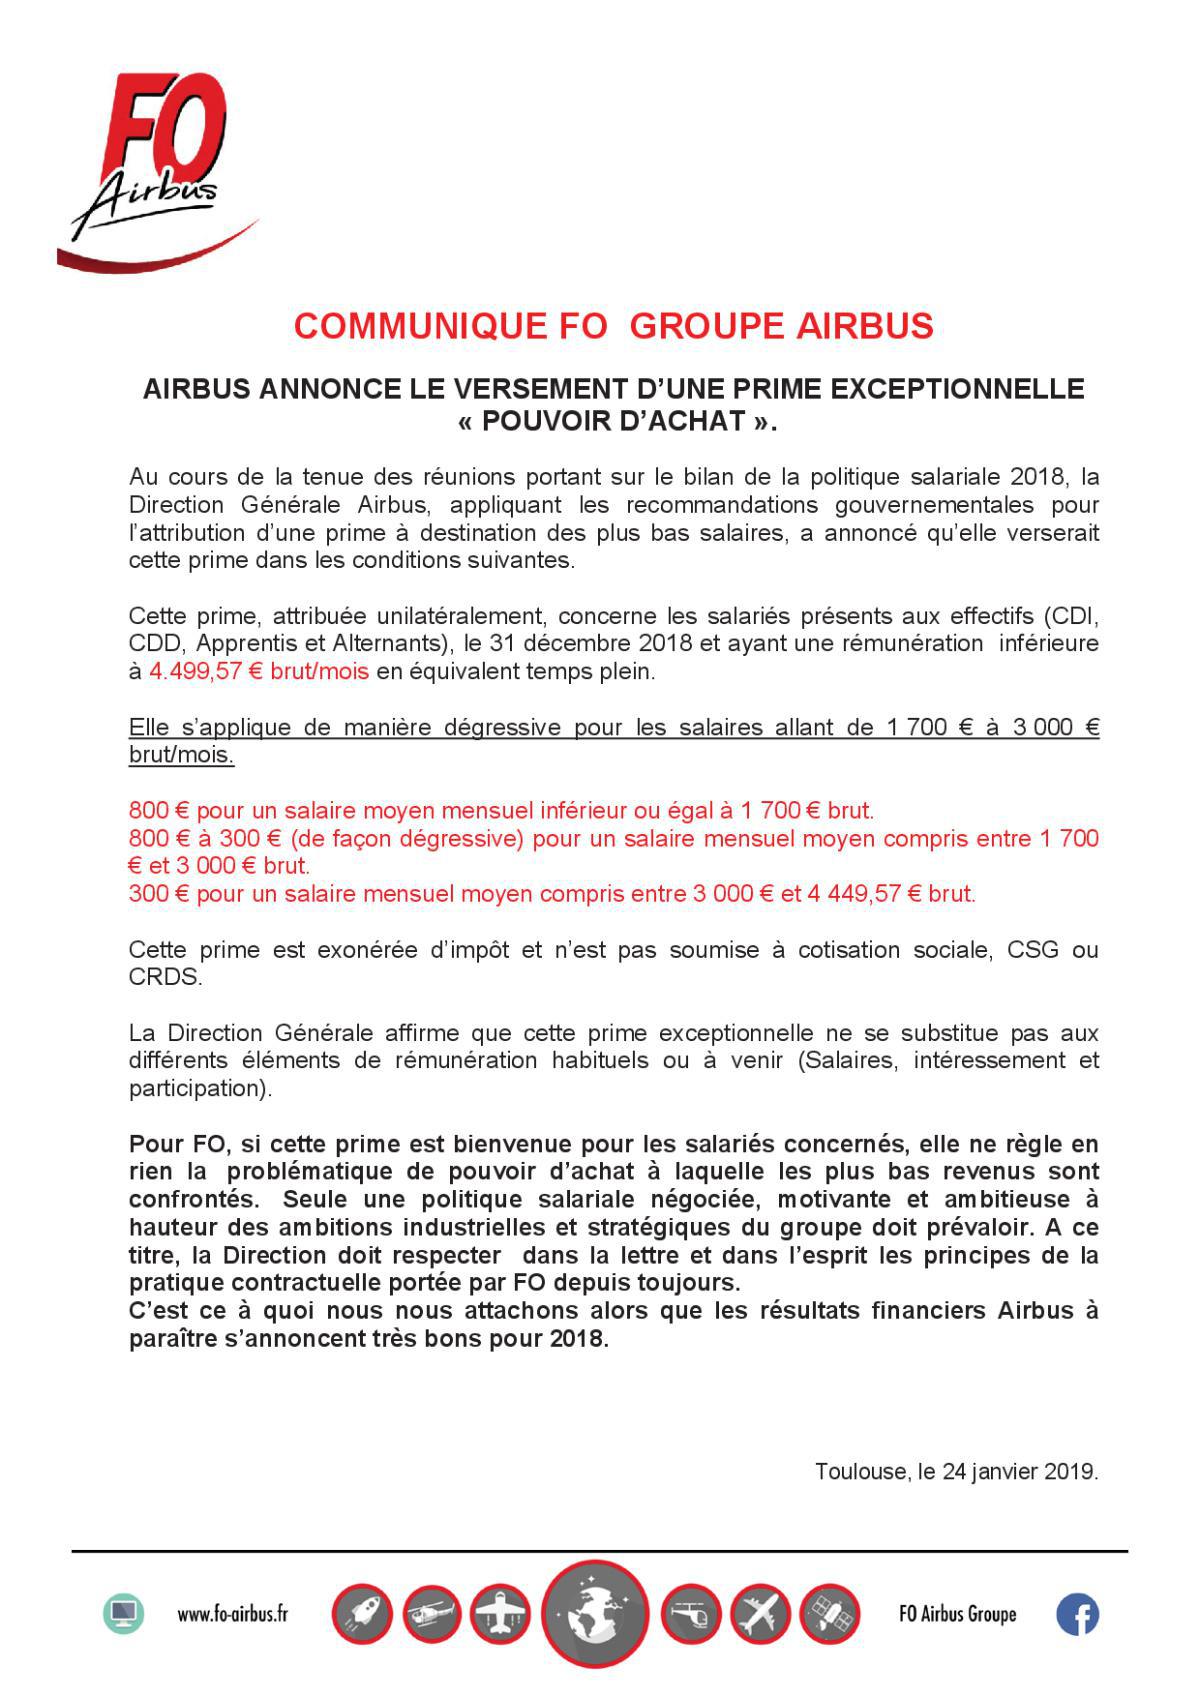 Communiqué Prime Macron Airbus Groupe